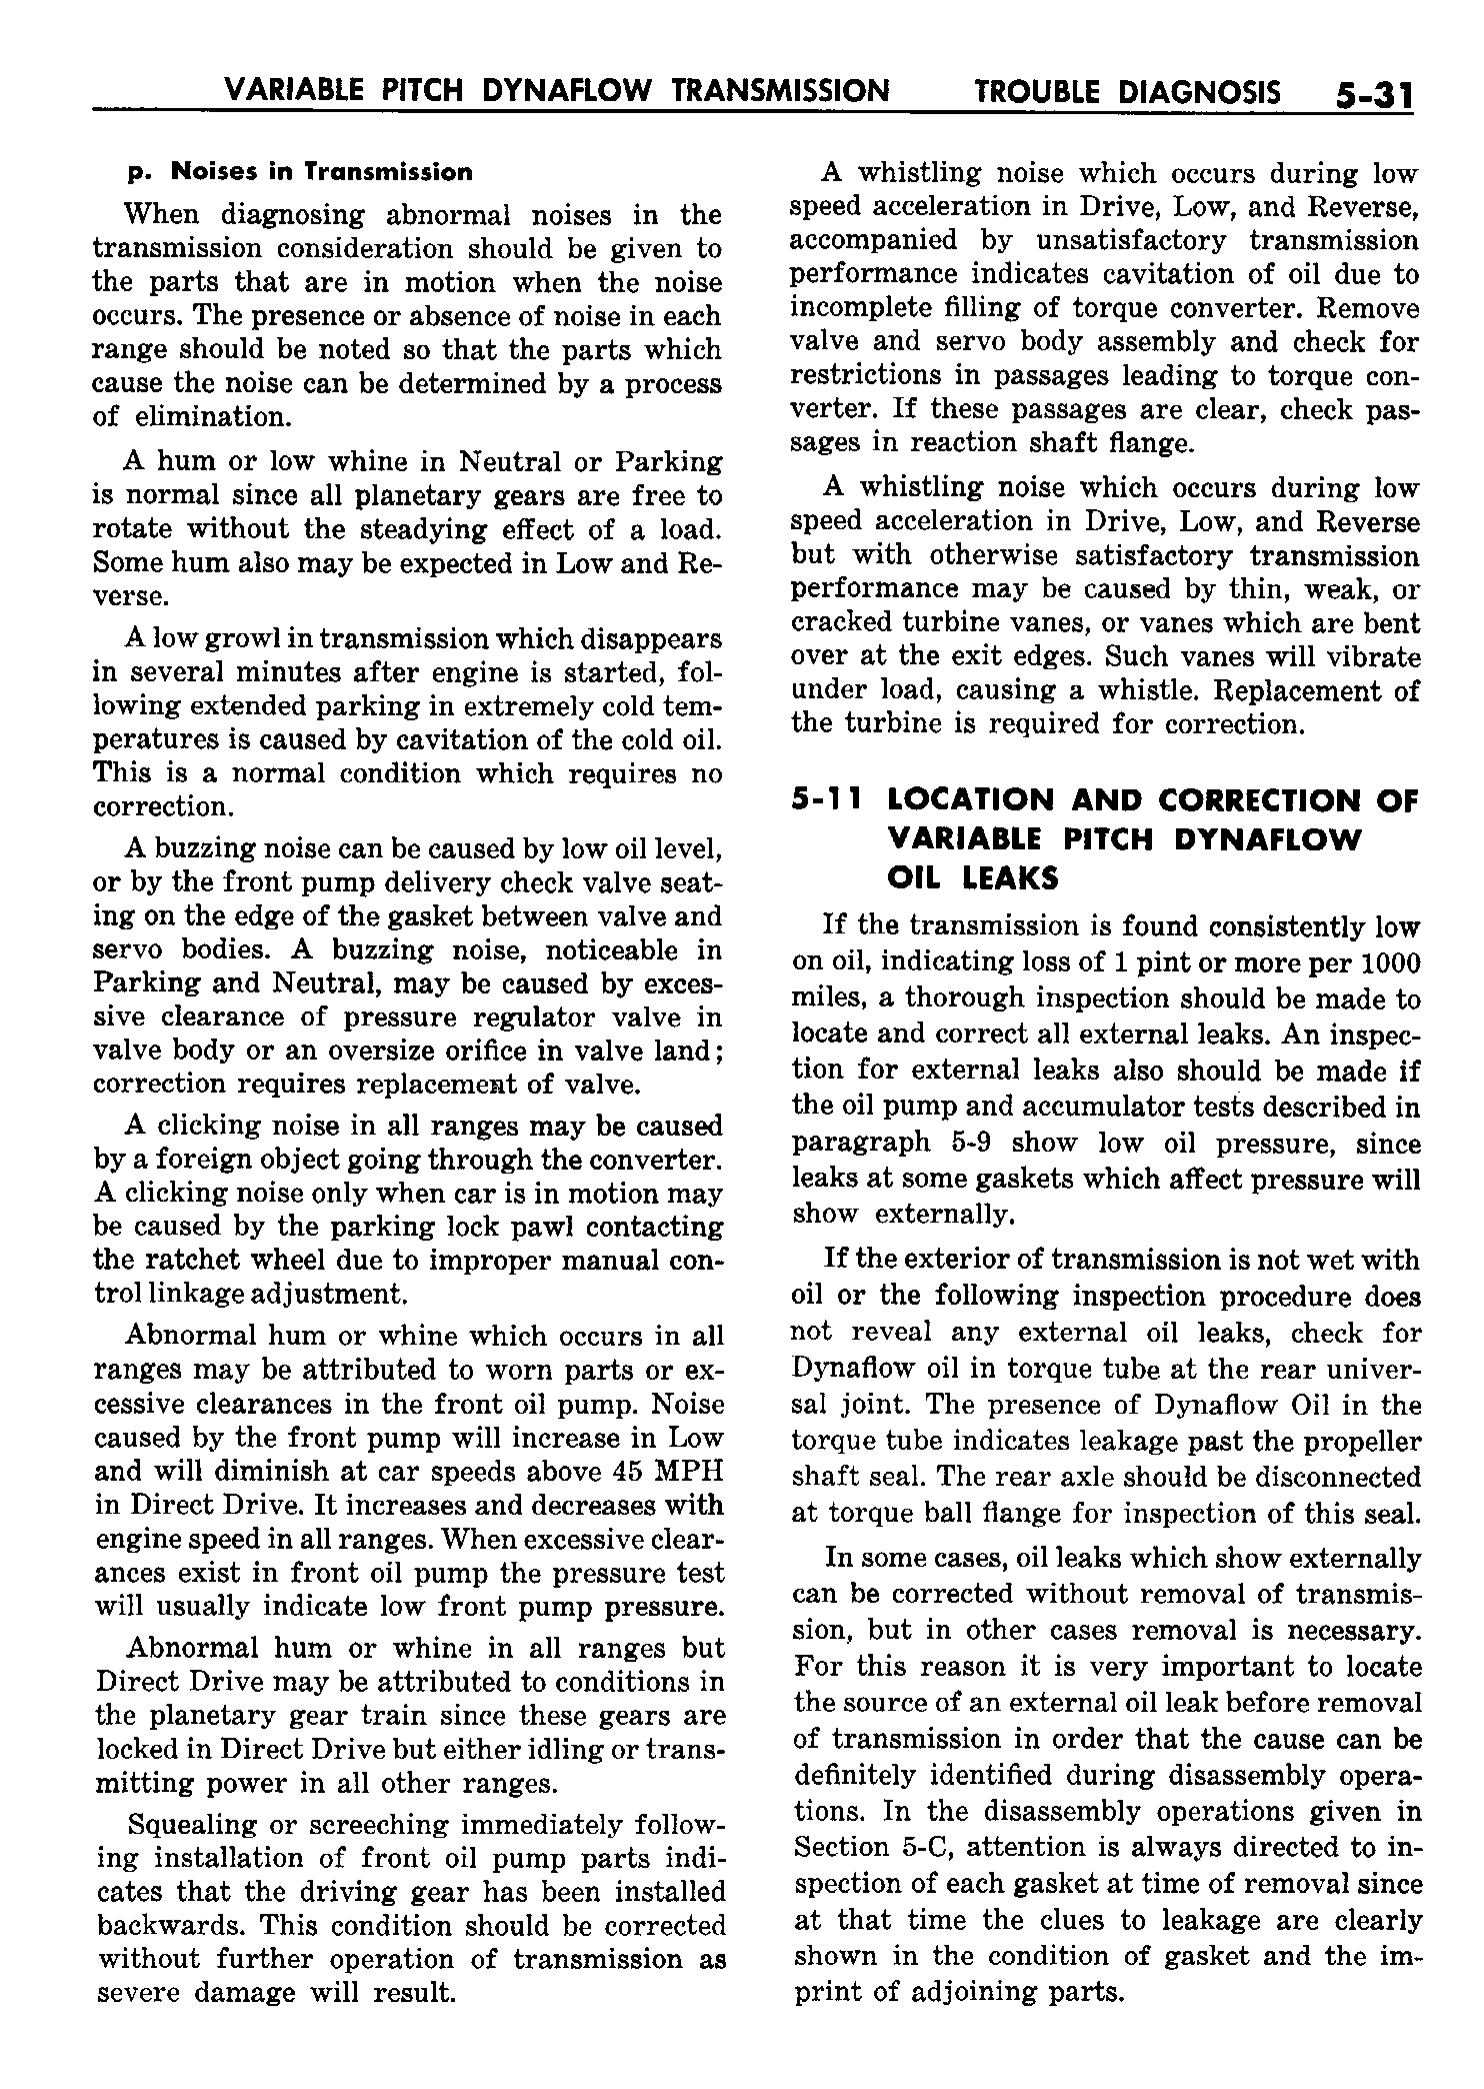 n_06 1958 Buick Shop Manual - Dynaflow_31.jpg